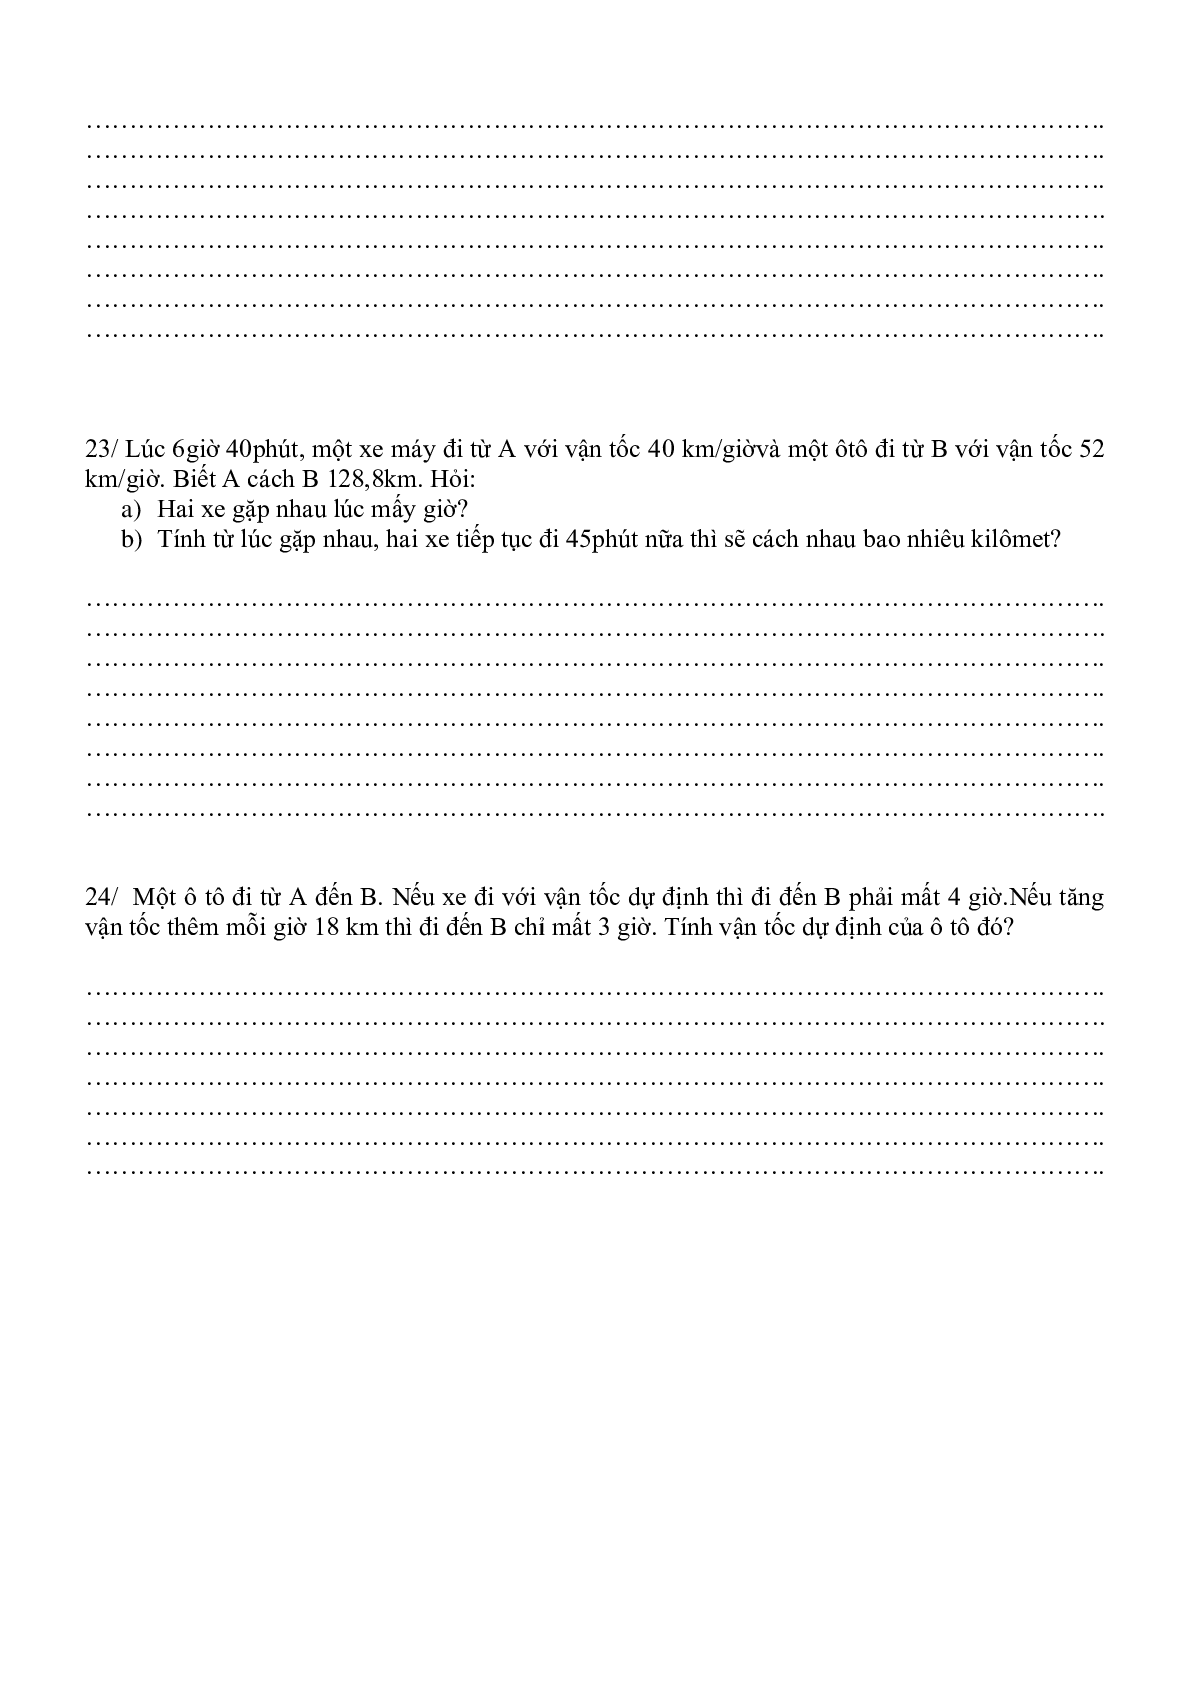 24 bài toán chuyển động môn Toán lớp 5 (trang 6)